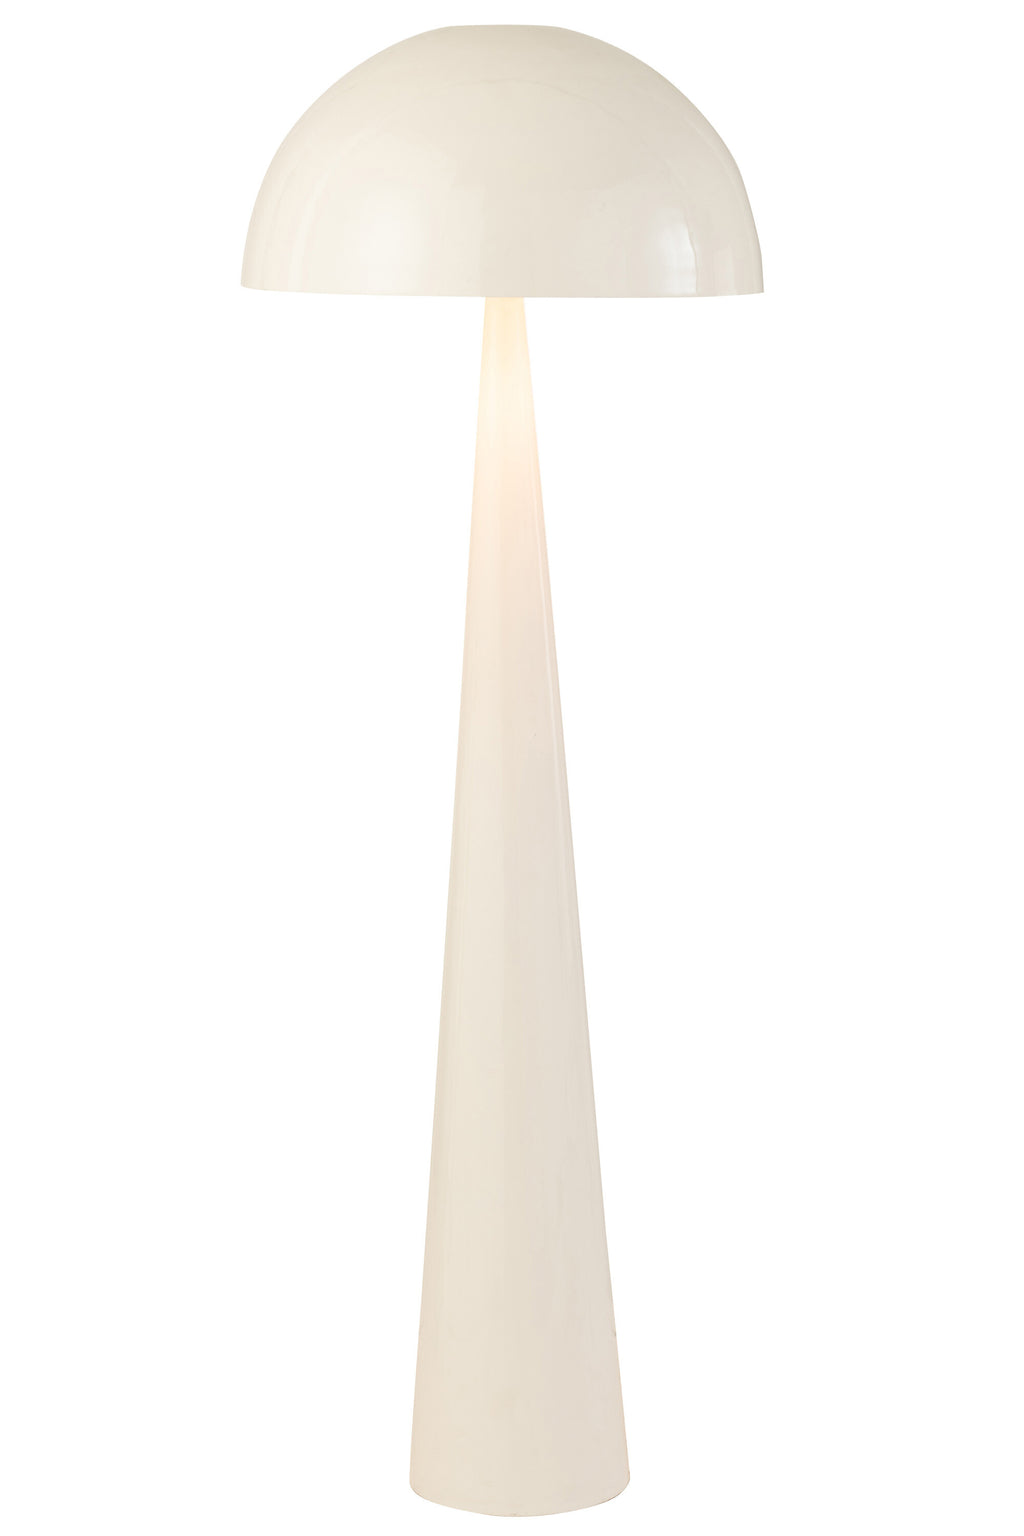 Stehlampe Pilz in Glänzend Weiß, Metall – Elegante Beleuchtung im Mode